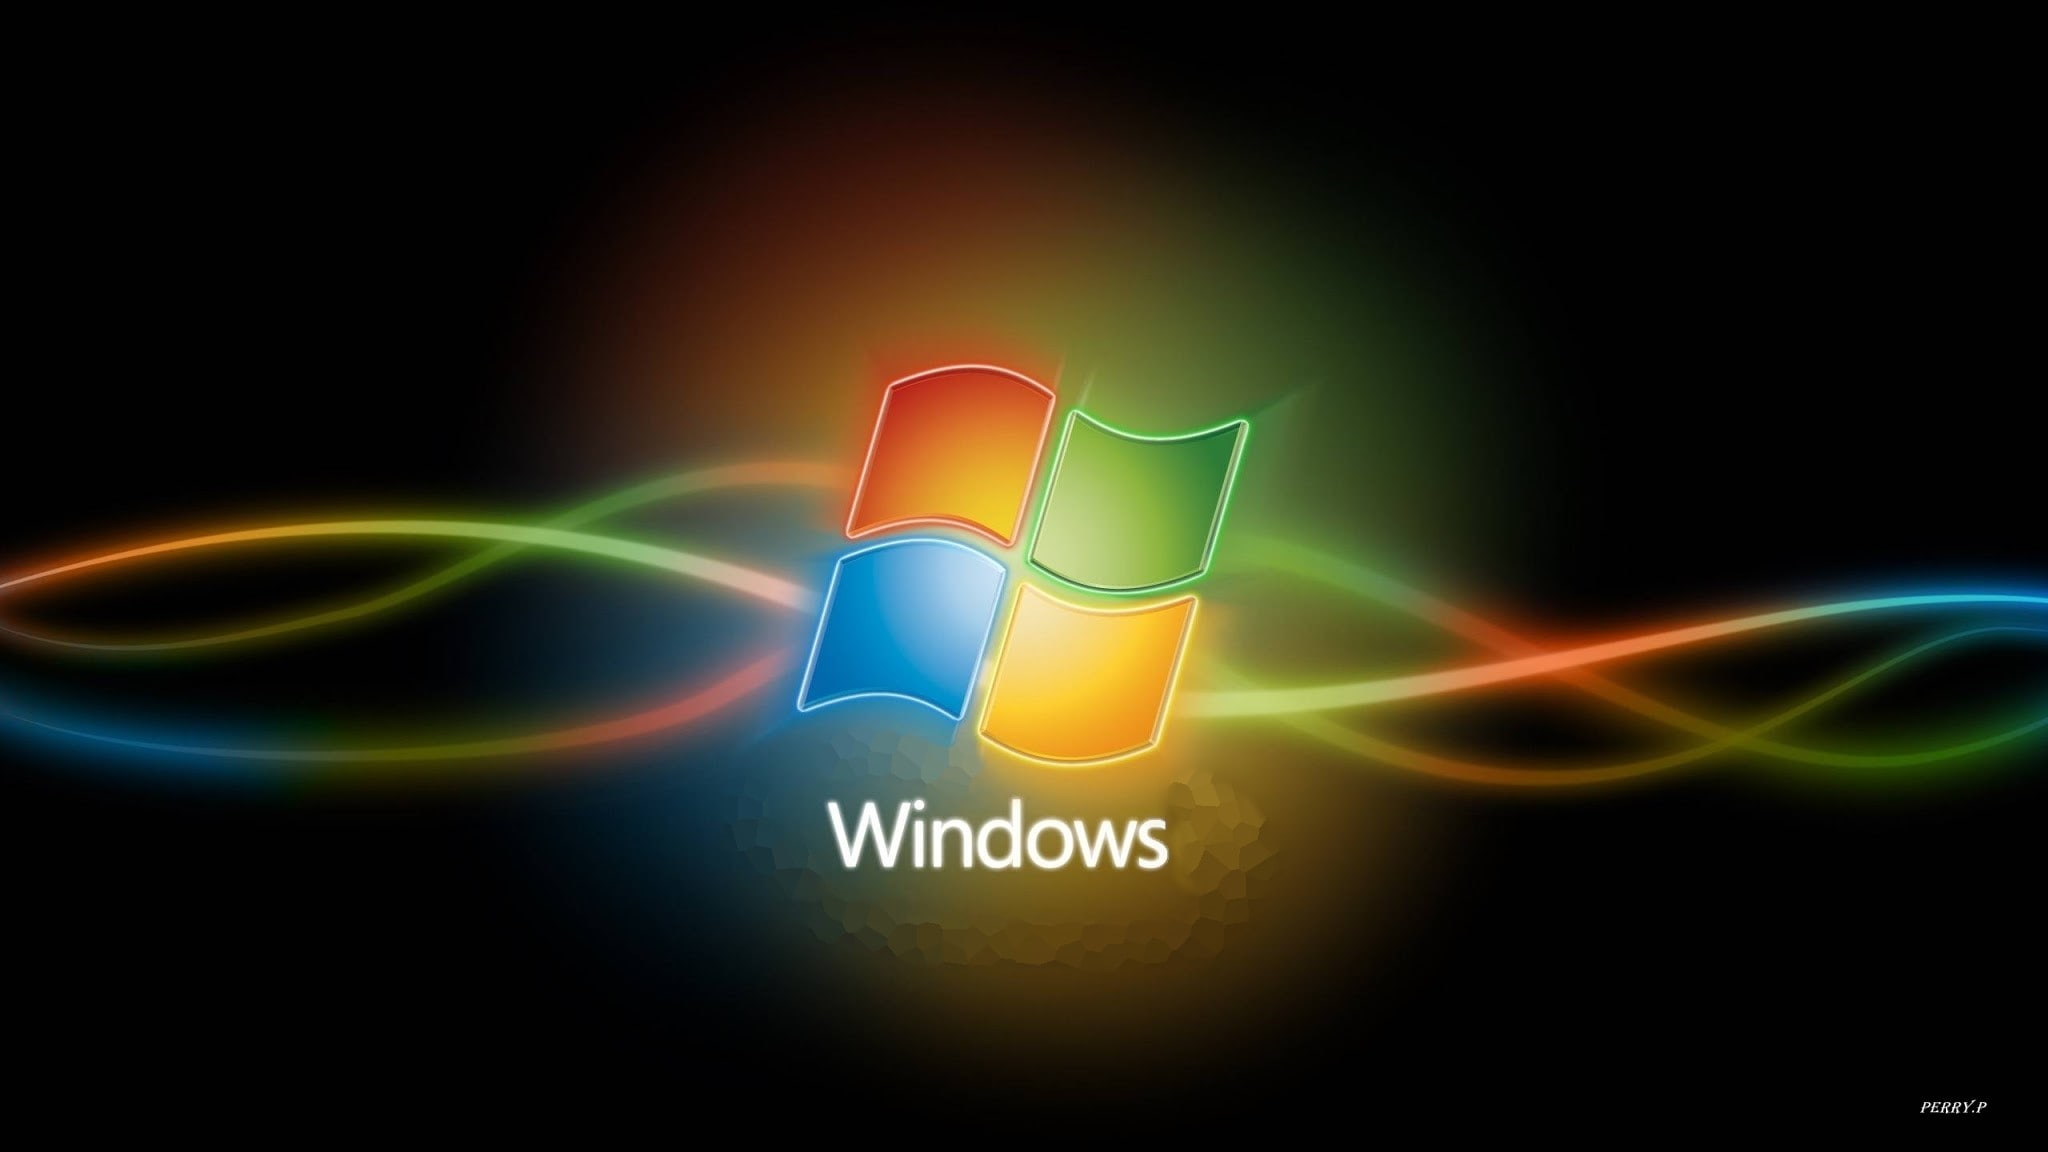 Windows 10, light - natural phenomenon, illuminated, abstract